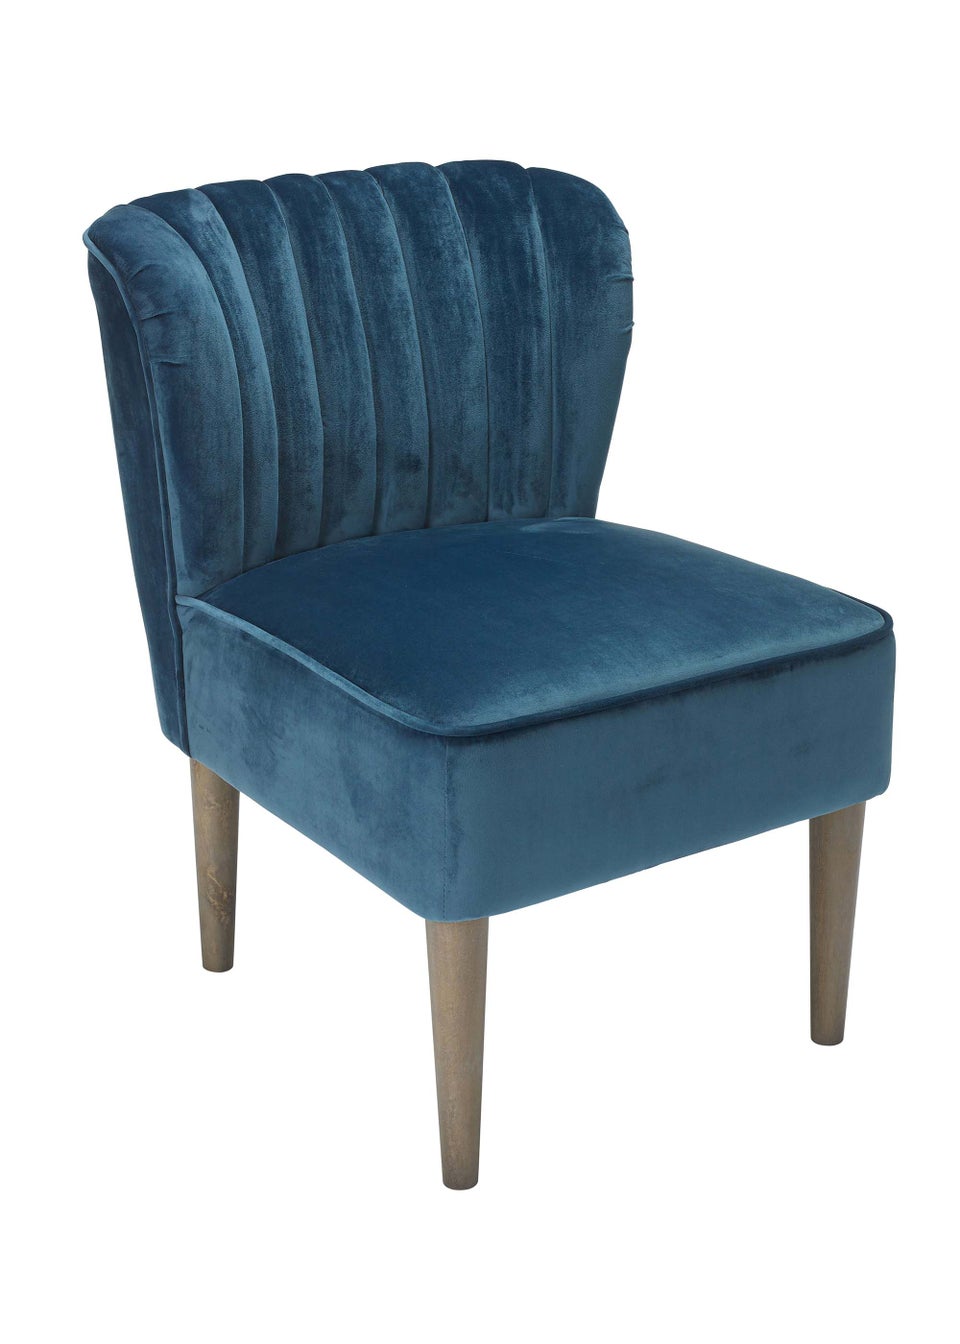 LPD Furniture Bella Chair Midnight Blue (795x680x600mm)